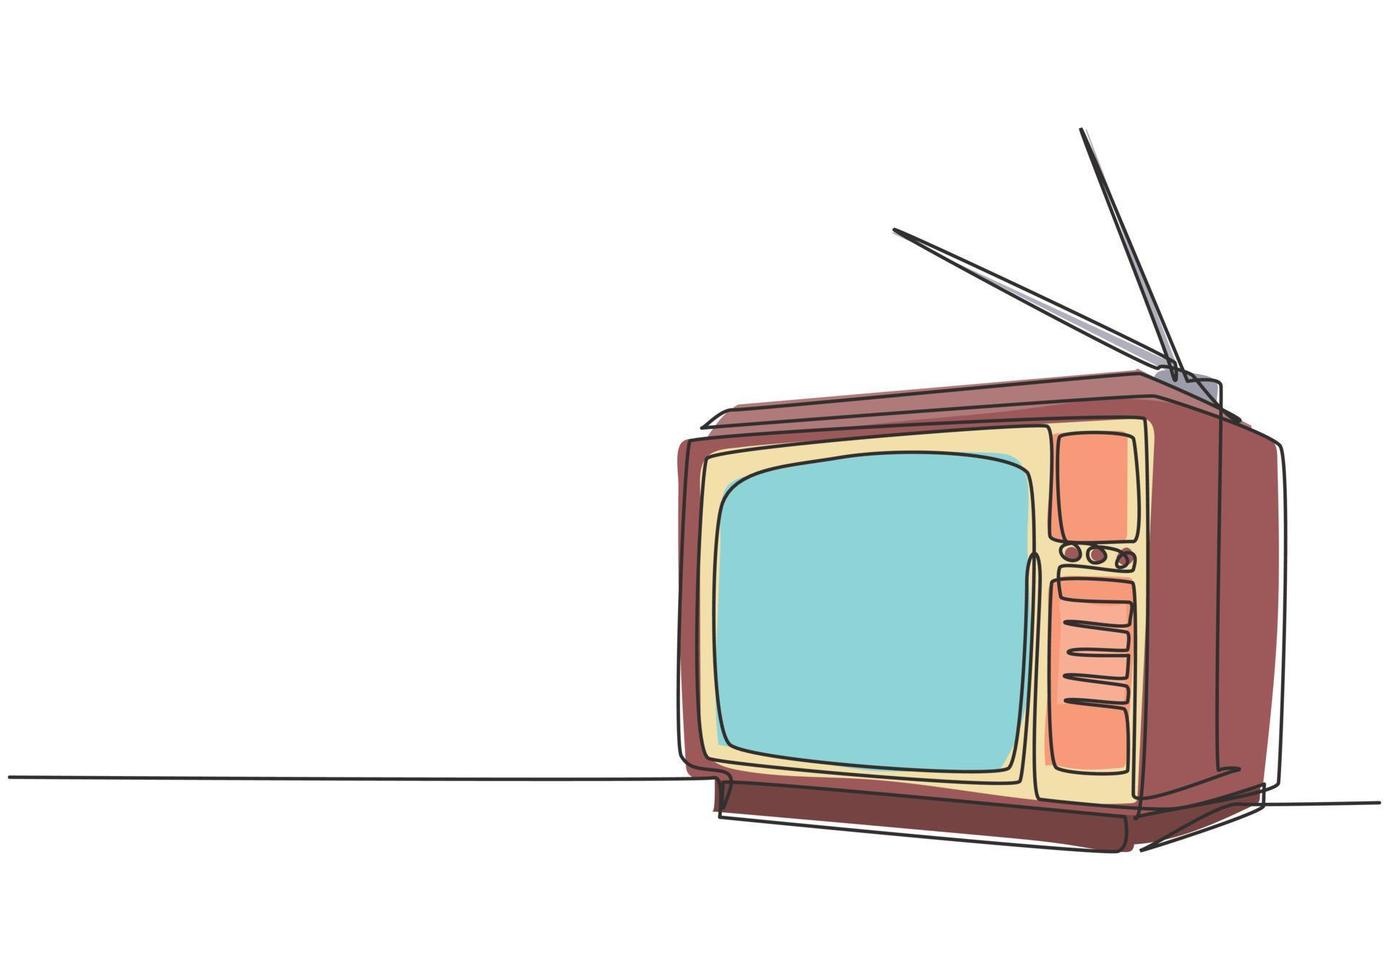 un dibujo de línea continua de un televisor antiguo retro con caja de madera y antena interna. Clásico concepto de televisión analógica vintage diseño de dibujo de una sola línea ilustración gráfica de vector